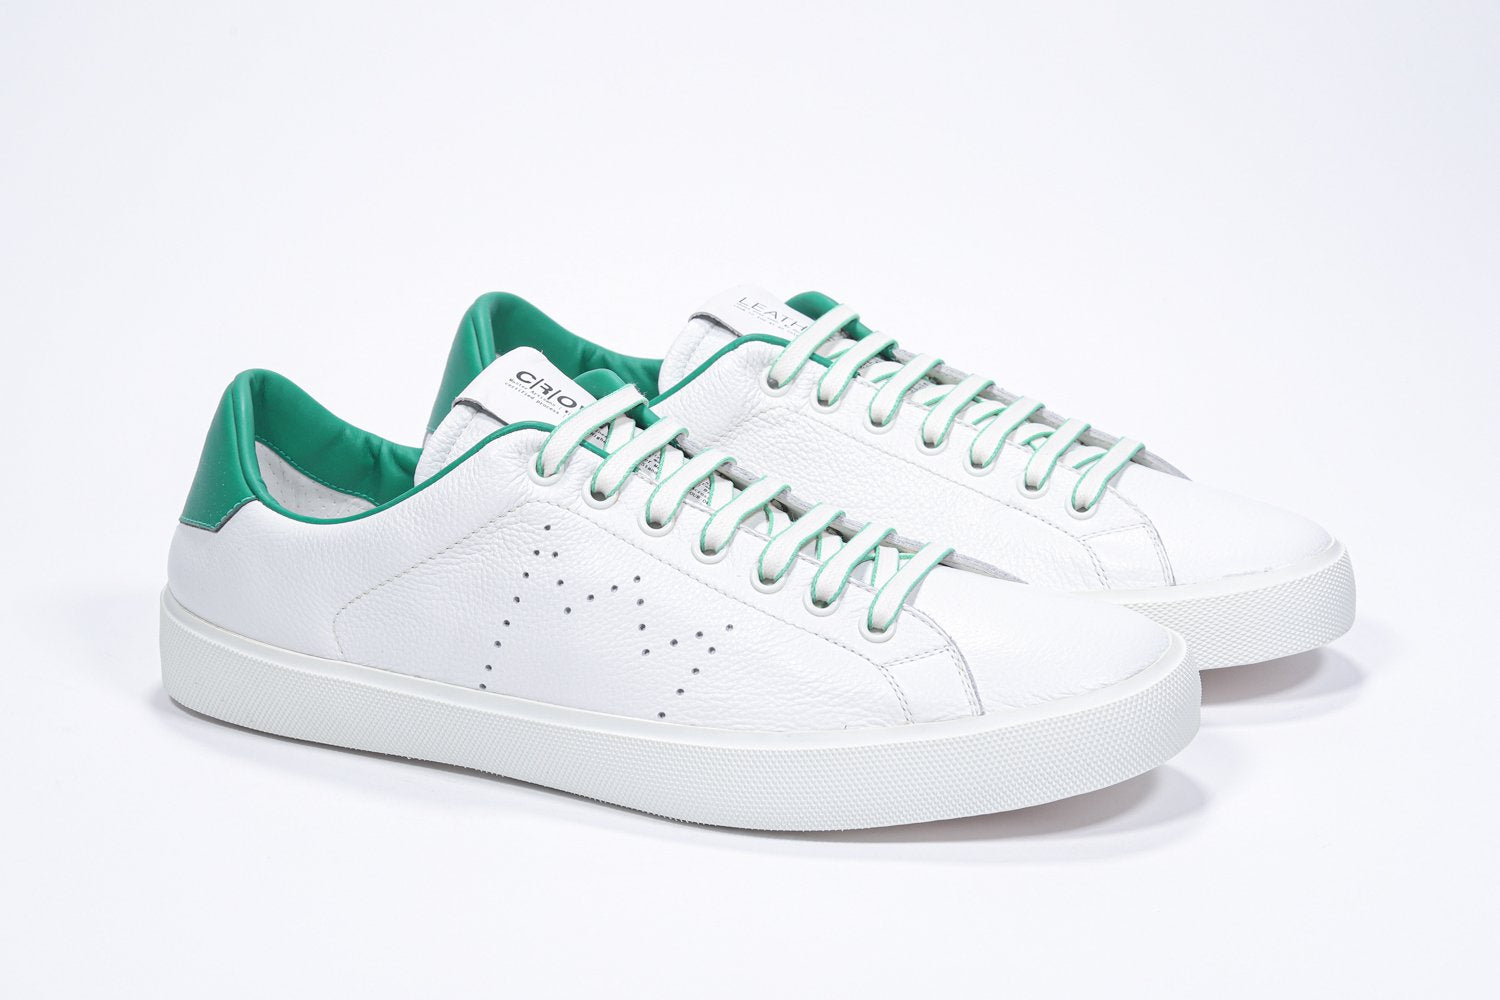 Tre quarti di BASSE  sneaker  bianco con dettagli verdi e logo della corona traforato sulla tomaia. Tomaia in pelle e suola in gomma bianca.